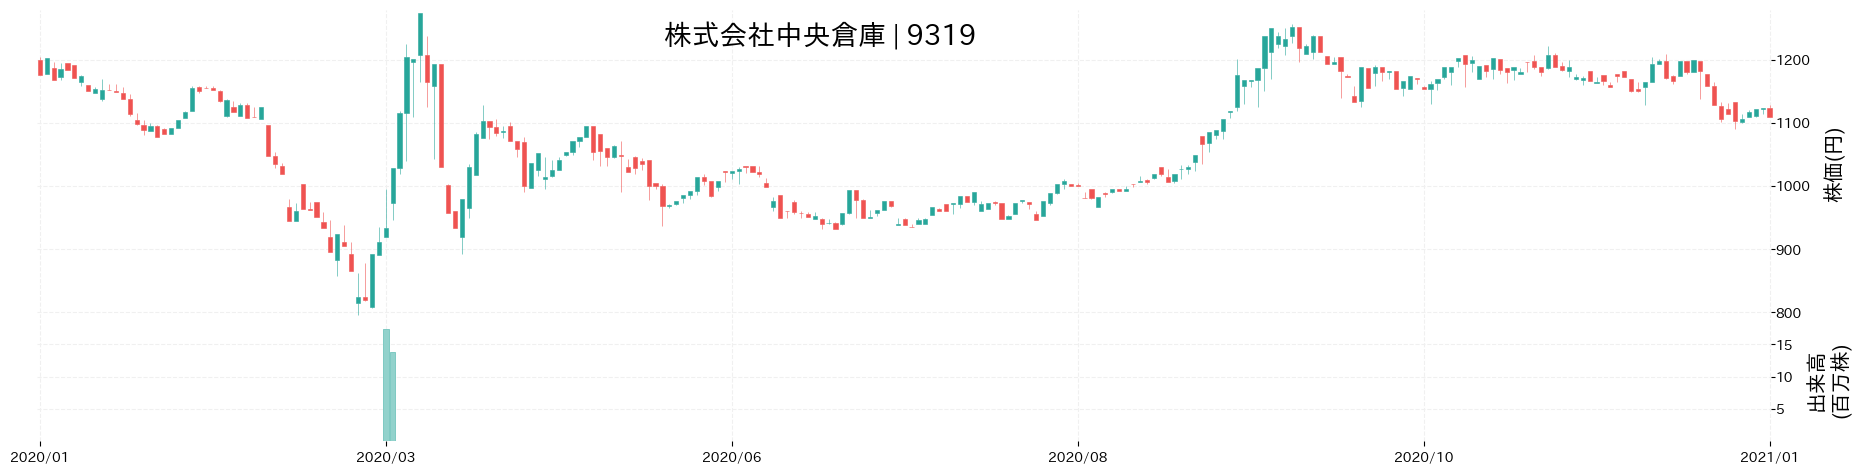 中央倉庫の株価推移(2020)